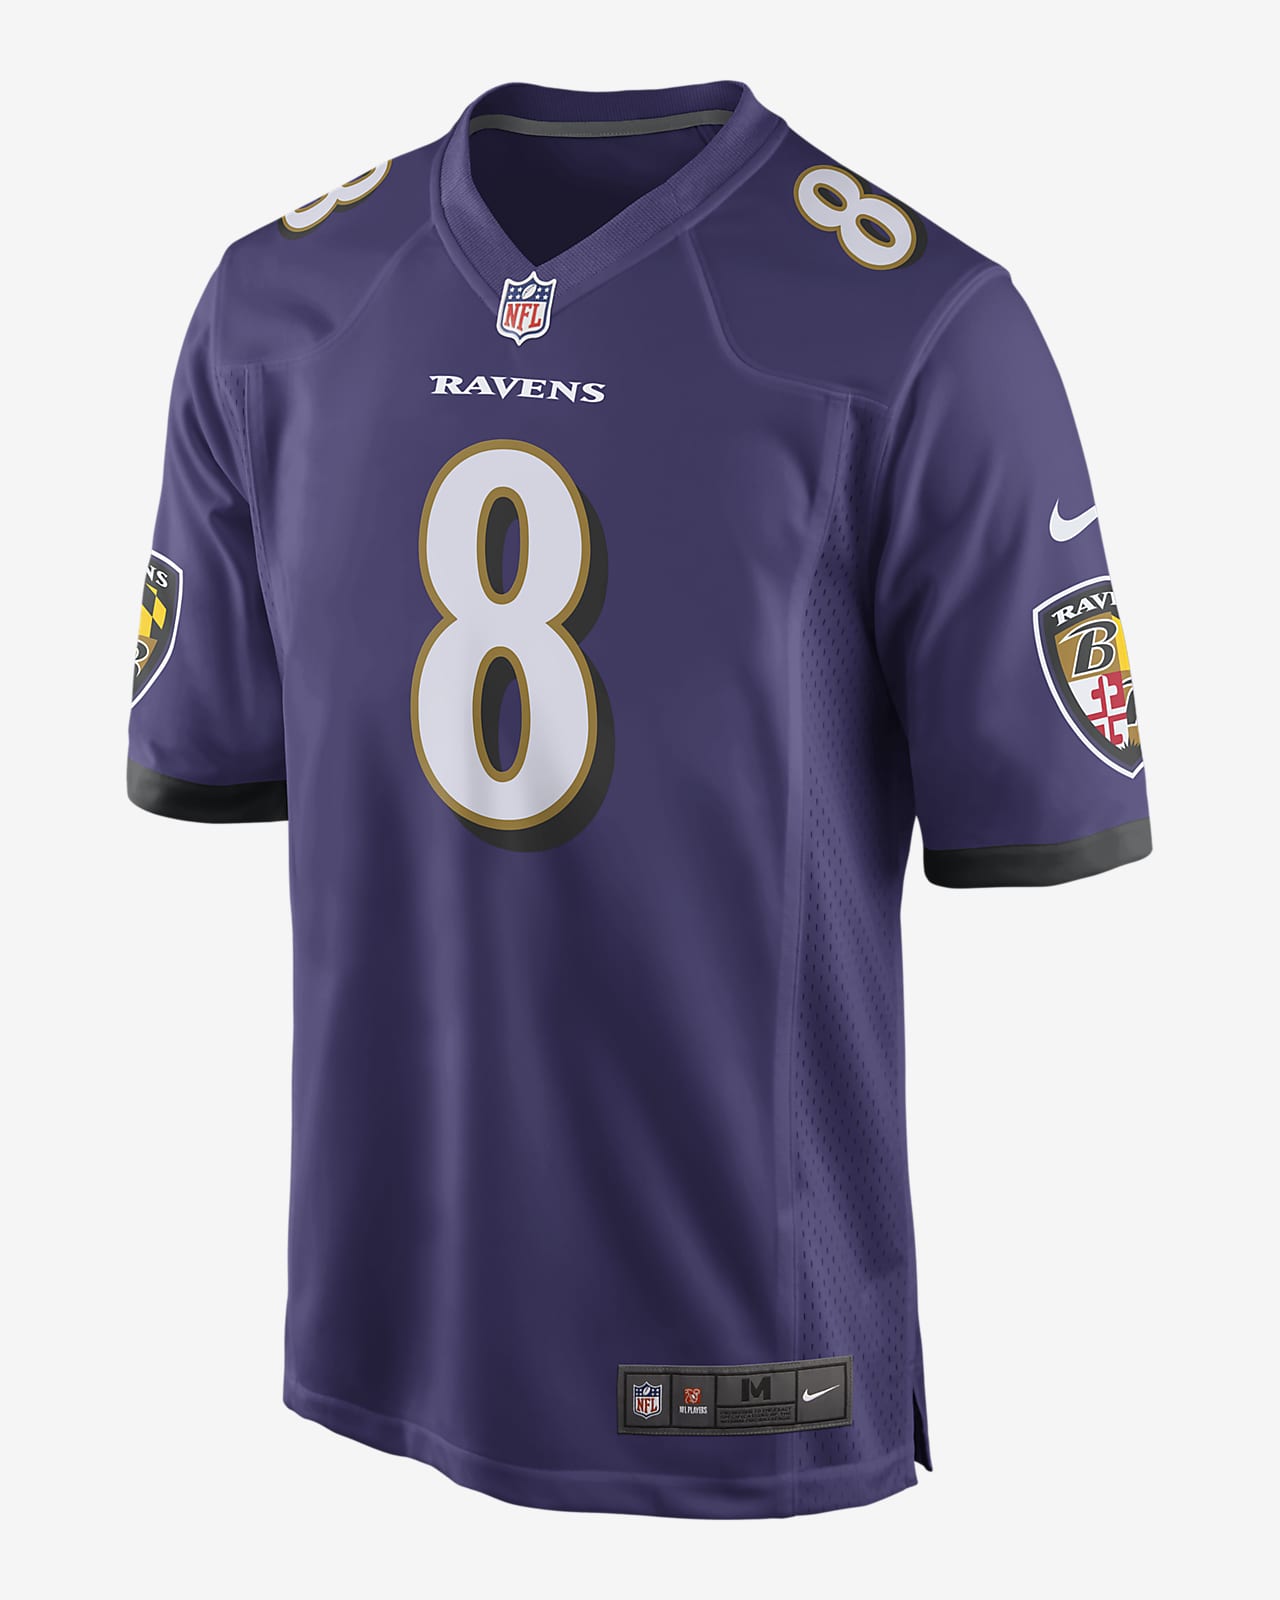 NFL Baltimore Ravens (Lamar Jackson) Men's Game Football Jersey